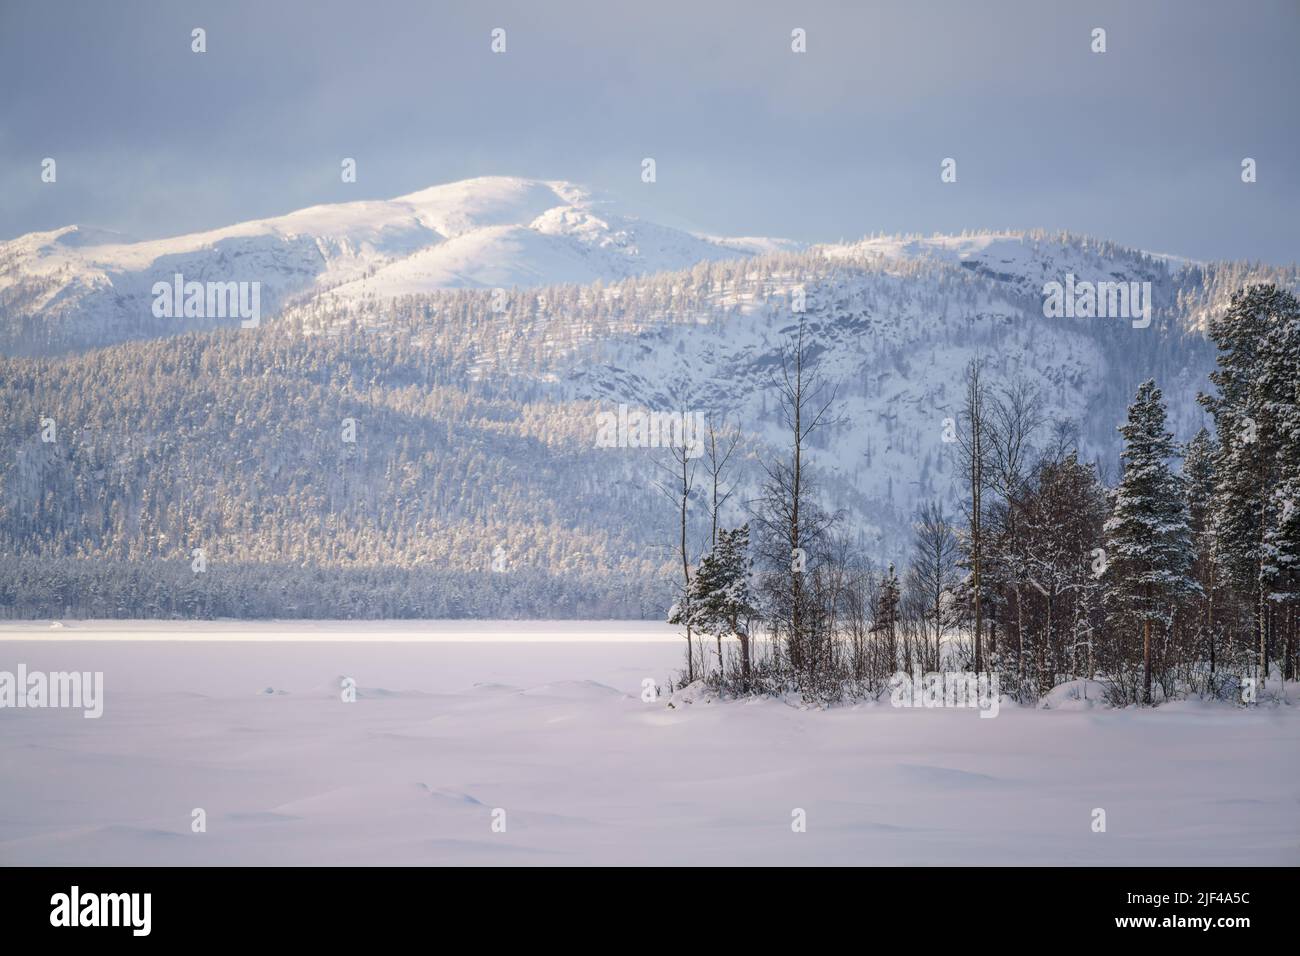 Winterlandschaft mit großem Berg im Hintergrund im Hintergrund, aufgenommen mit langer Linse, Jokkmokk County, Schwedisch Lappland, Schweden Stockfoto